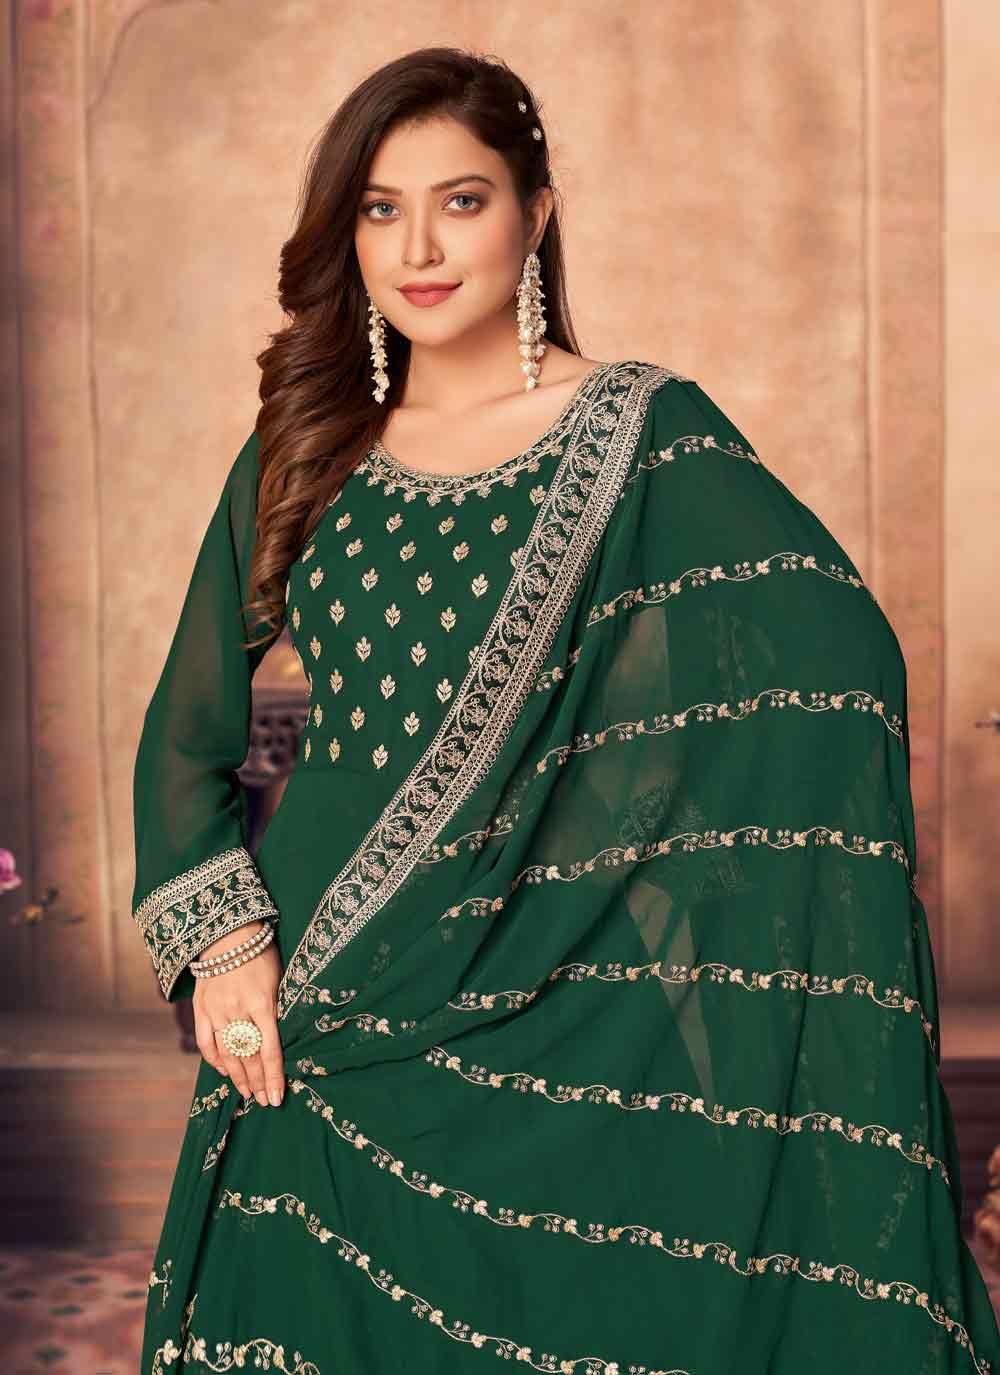 Bella Fancy Dresses Salwar Kameez Green Faux Georgette Festival Floor Length Designer Anarkali Suit